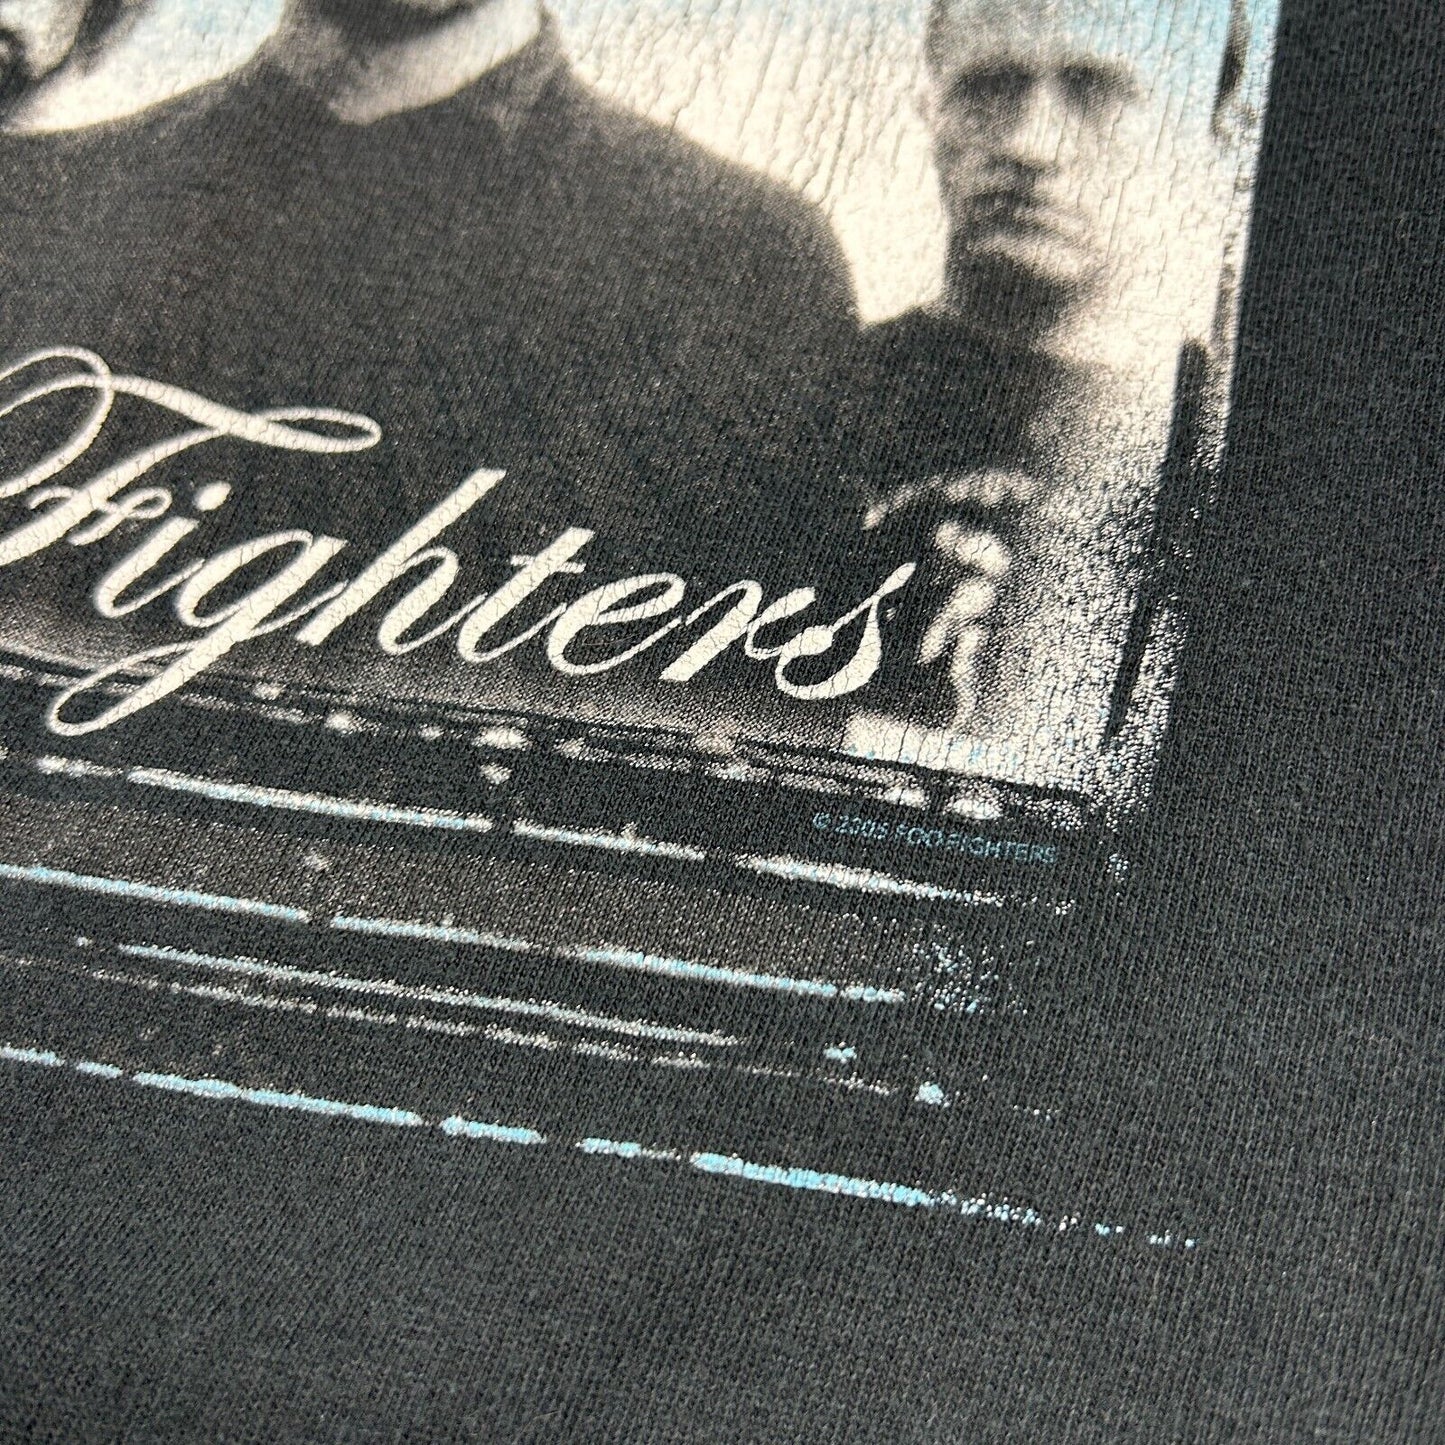 VINTAGE 2005 | FOO FIGHTERS Portrait Band T-Shirt sz M Adult